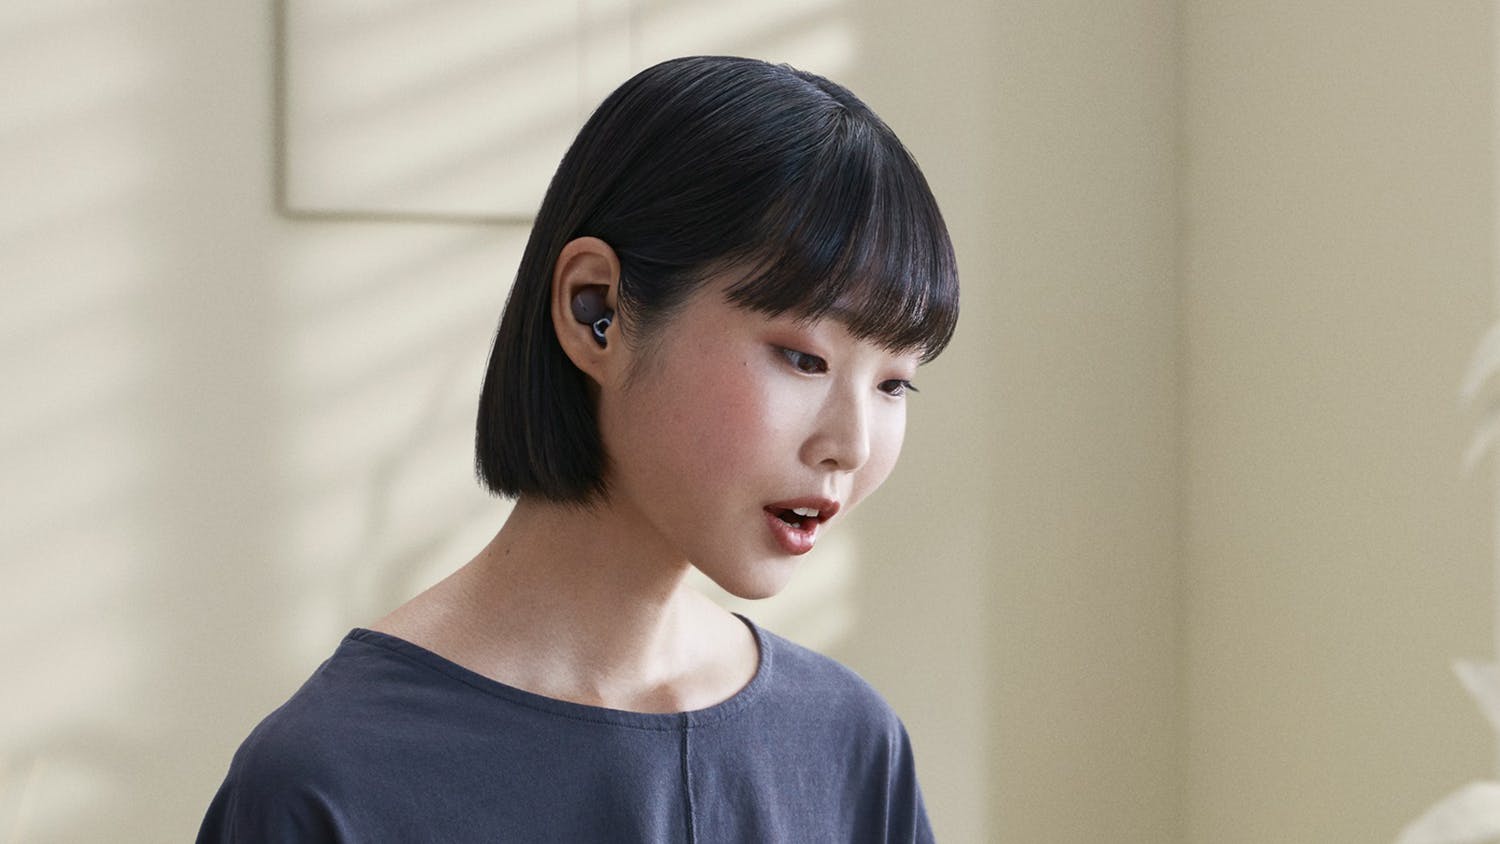 Sony WF-L900 LinkBuds True Wireless In-Ear Headphones - Grey